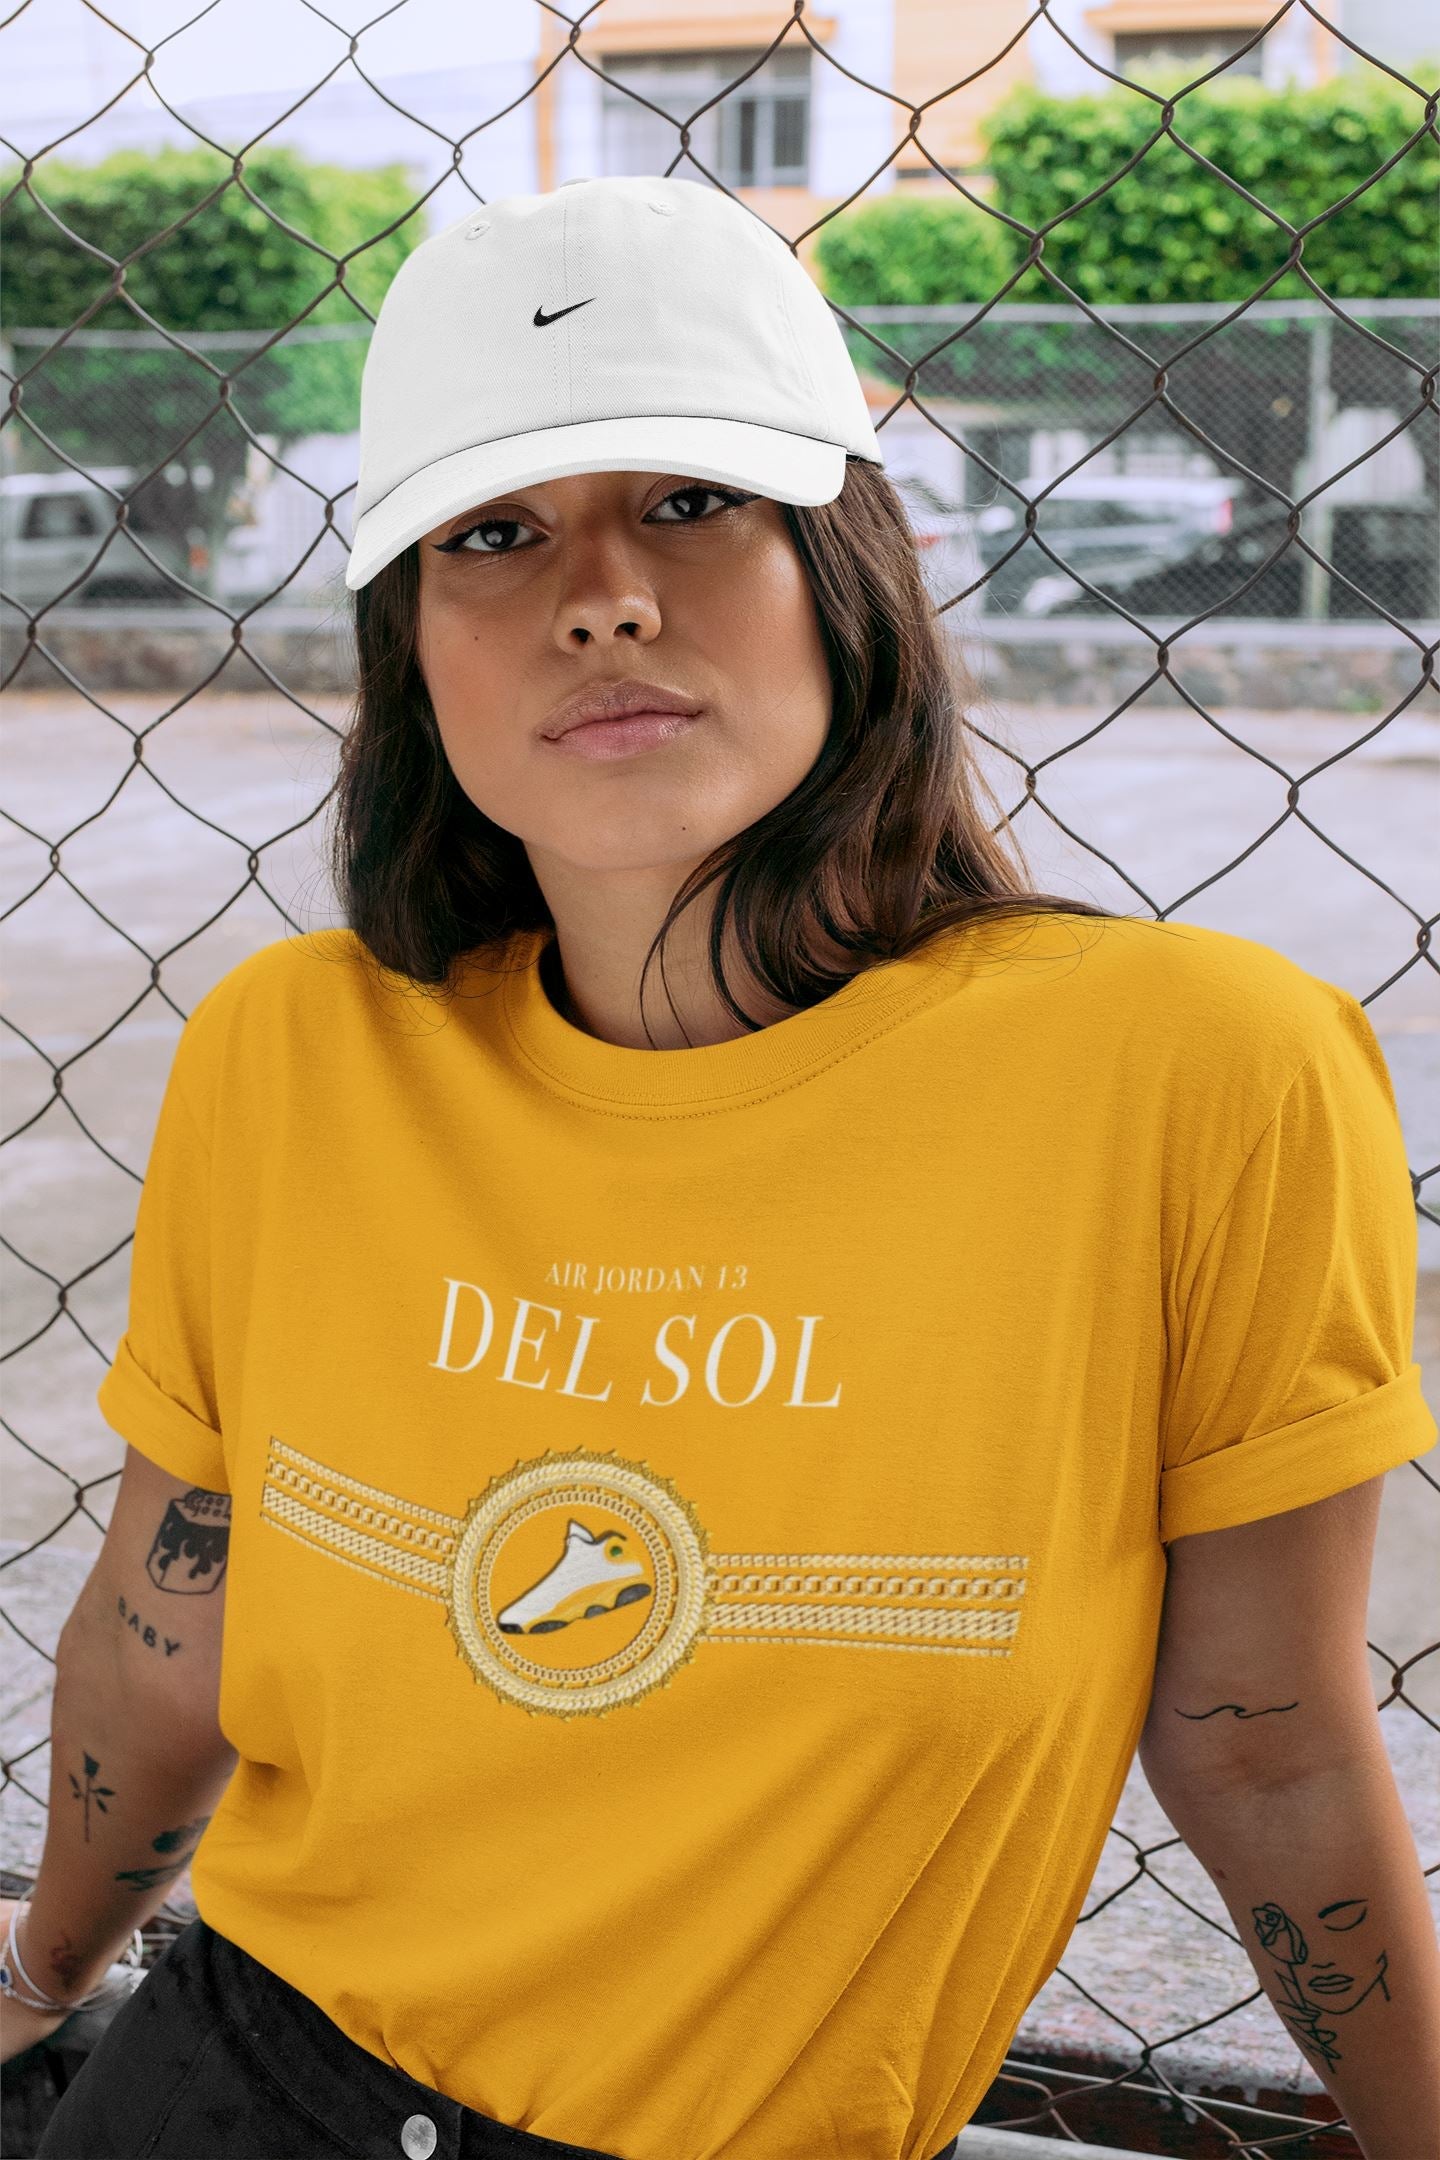 Del Sol' Air Jordan 13 Is Releasing This Month